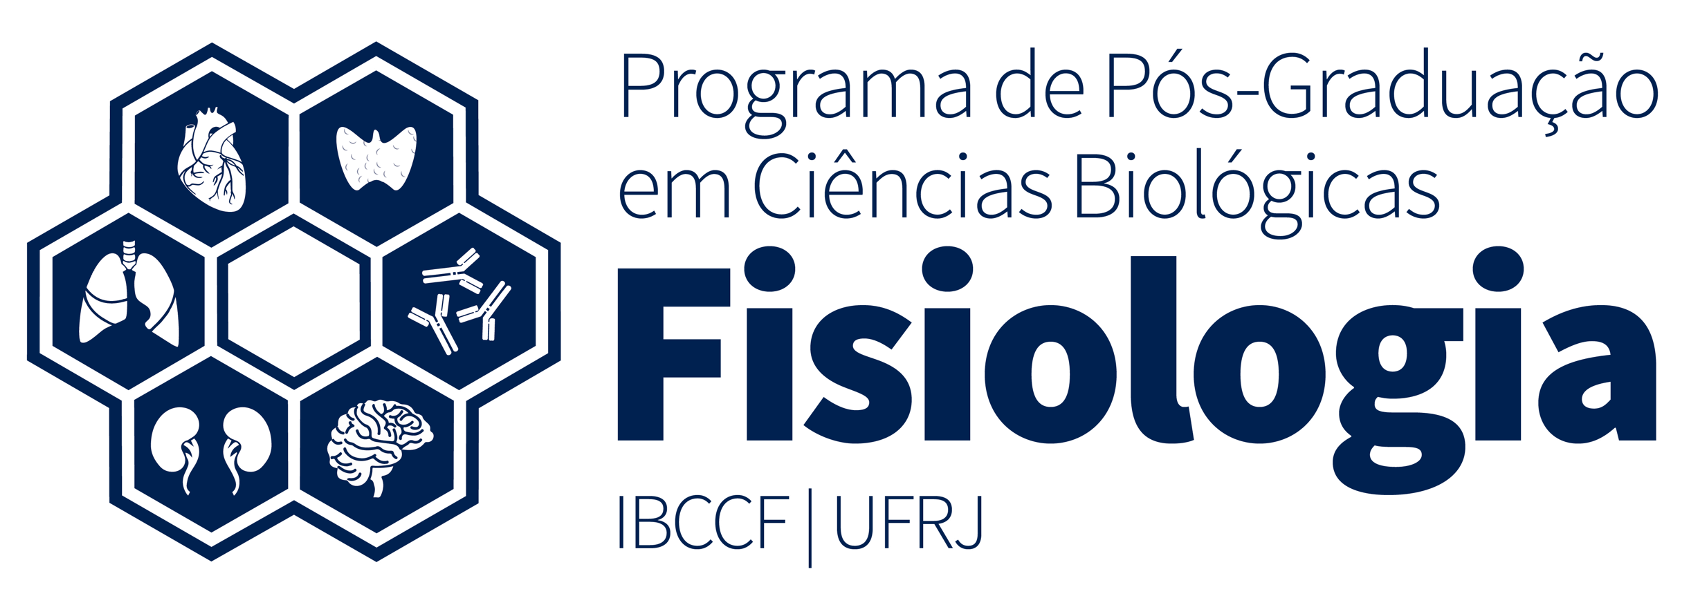 Alfred SHOLL-FRANCO, Research Associate, PhD, Federal University of Rio  de Janeiro, Rio de Janeiro, UFRJ, Instituto de Biofísica Carlos Chagas  Filho (IBCCF)